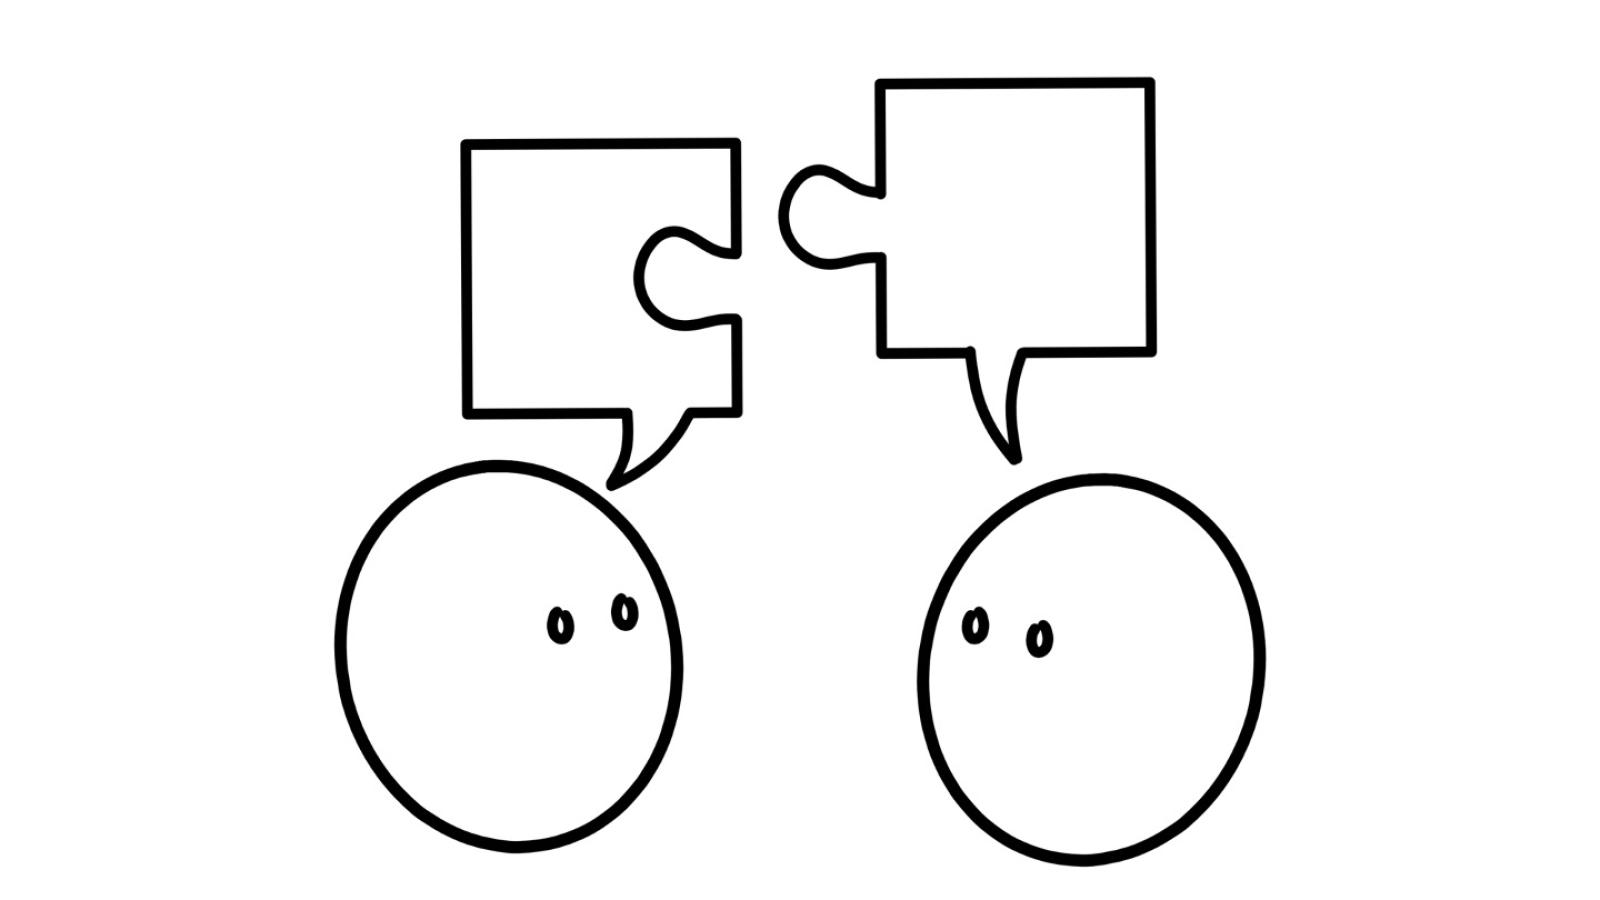 Illustration zeigt zwei symbolhafte K?pfe mit Augen, die sich anschauen und je eine Sprechblase ber dem Kopf haben. Diese Sprechblasen sind geformt wie Puzzleteile, die sich passend zusammensetzen lassen.